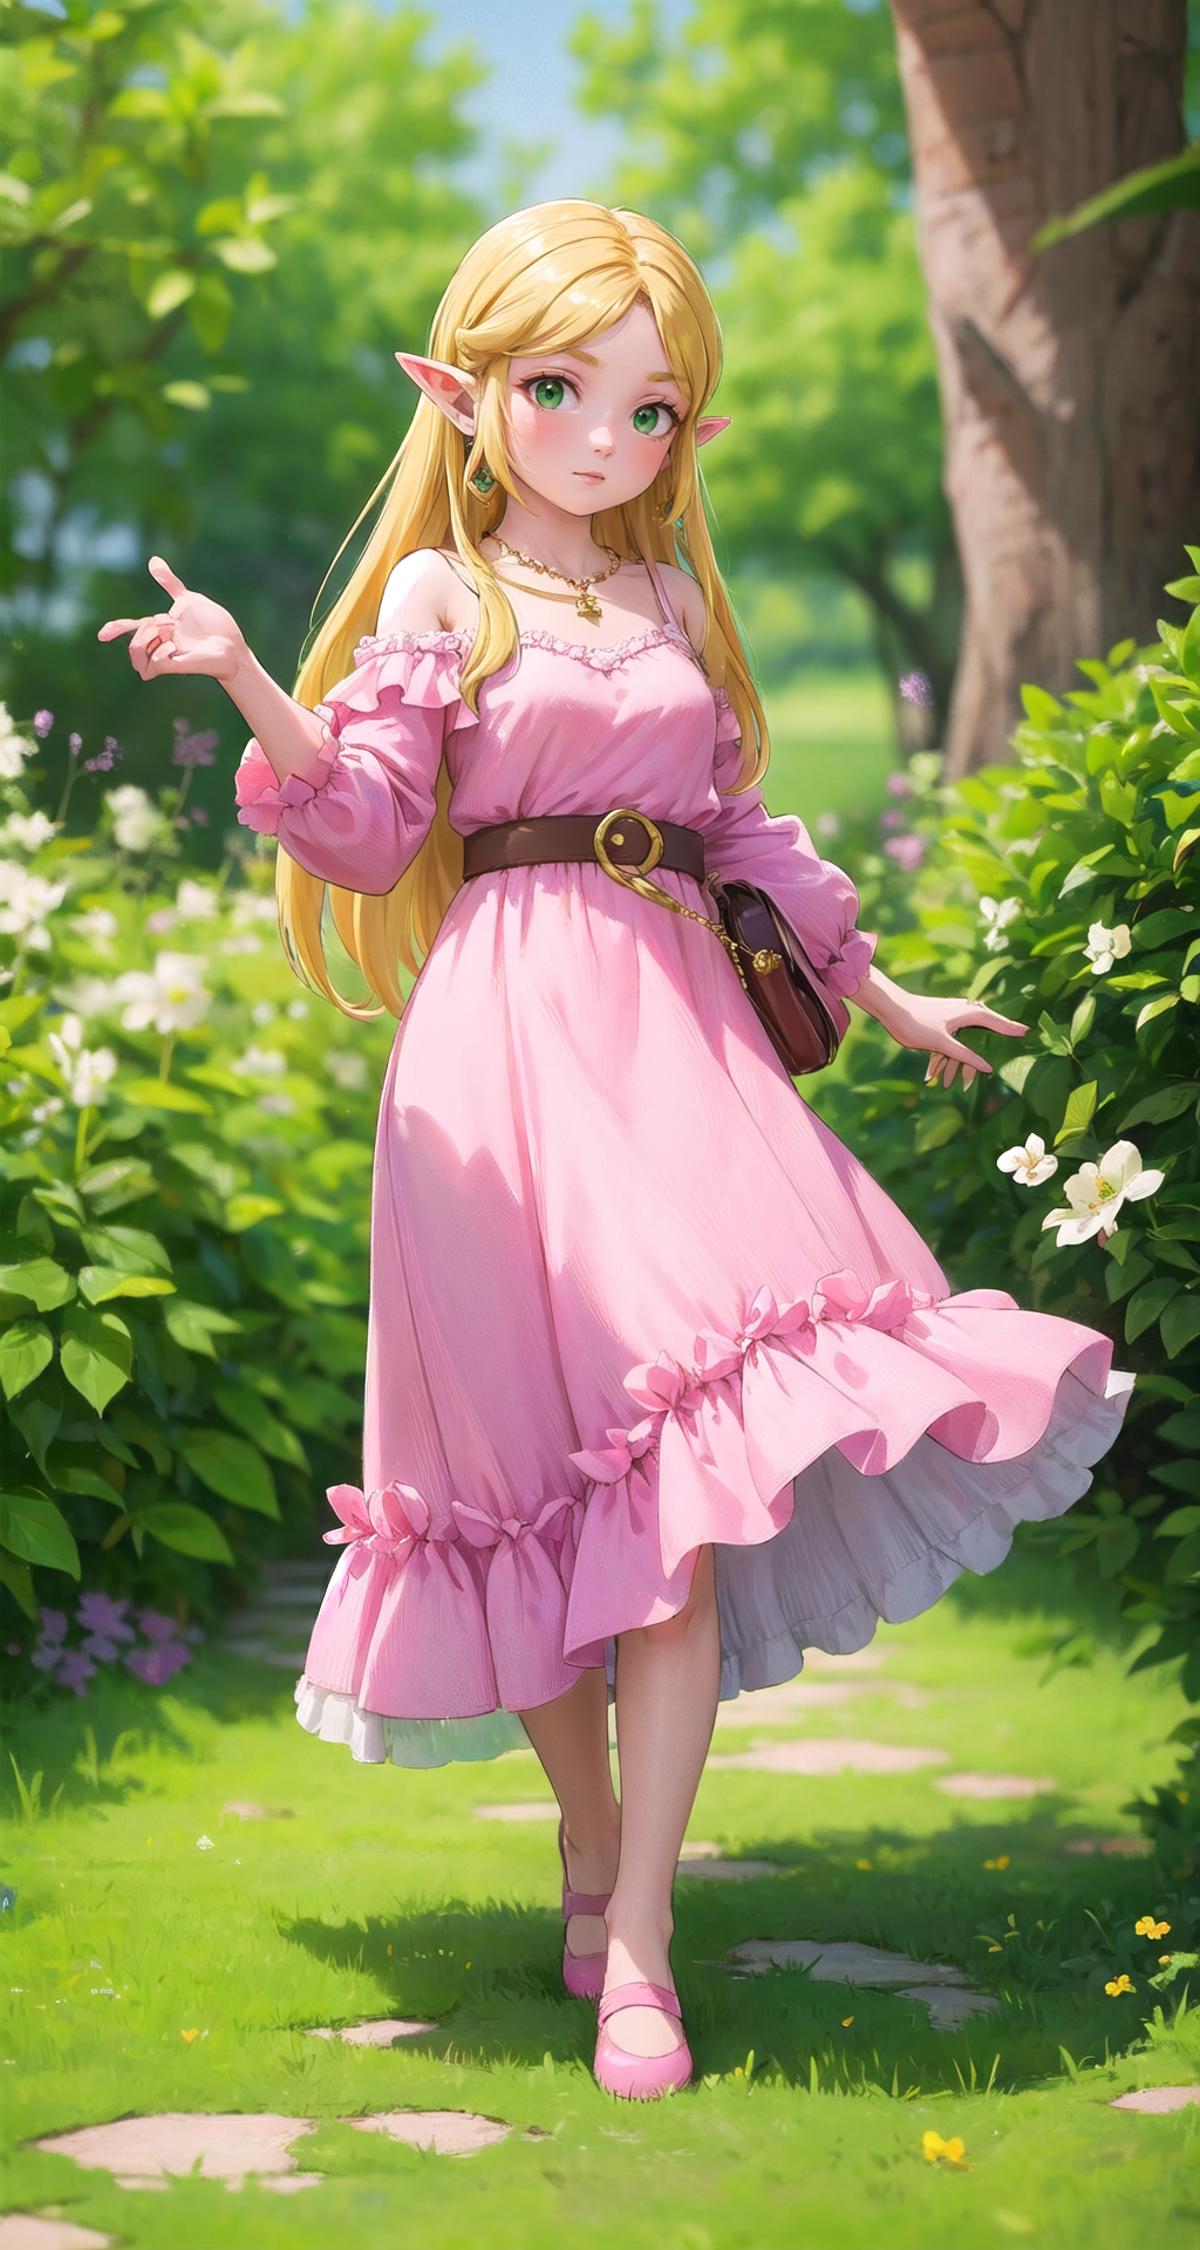 Princess Zelda (ゼルダ姫) - The Legend of Zelda (ゼルダの伝説) - COMMISSION image